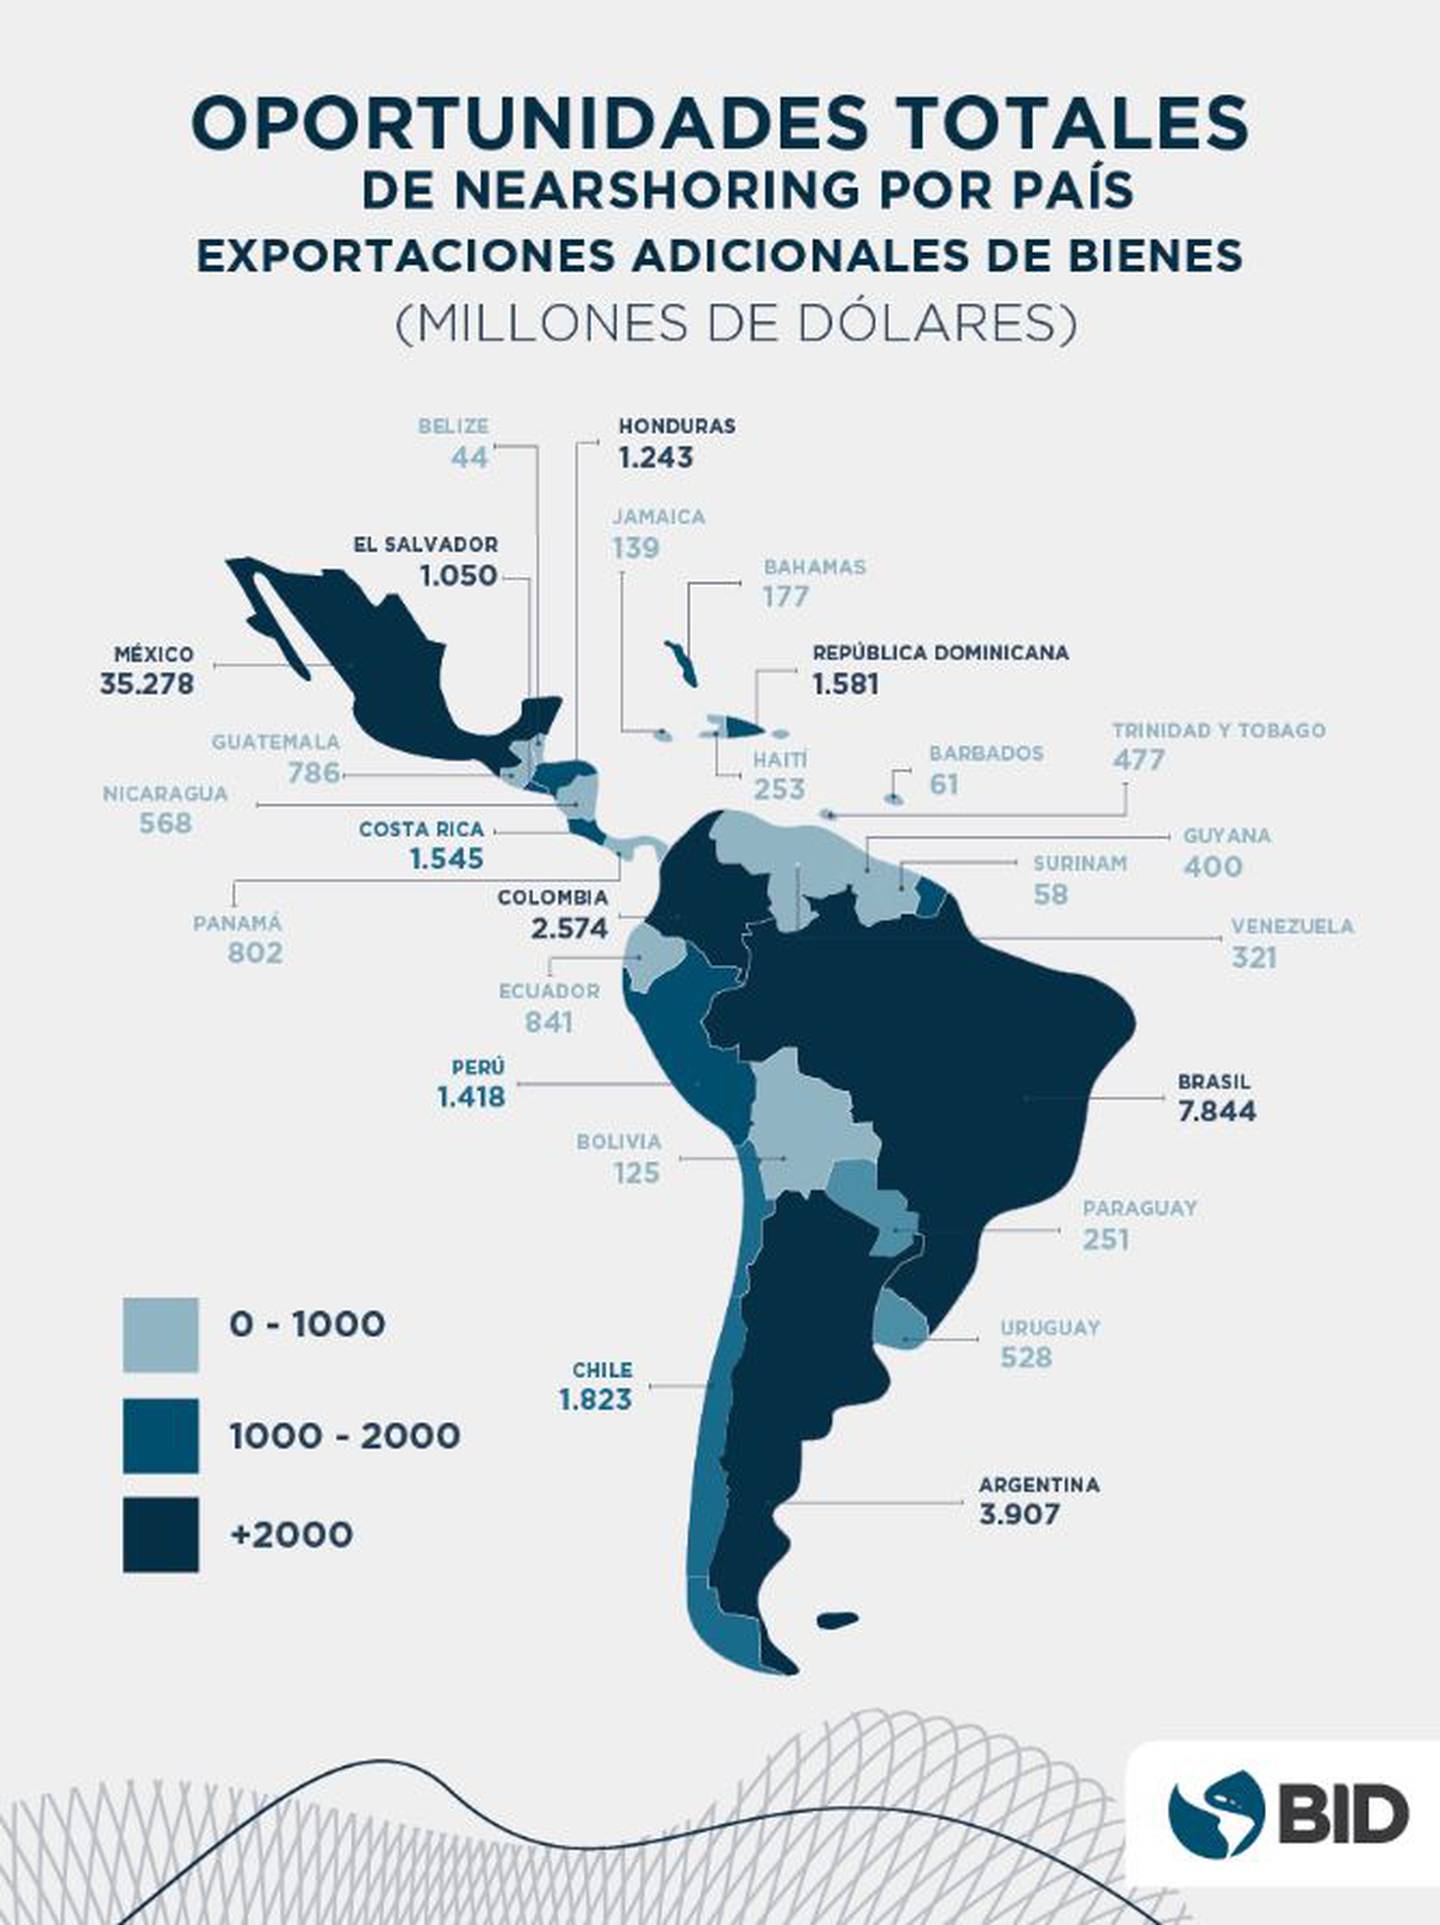 Un estudio elaborado por el BID determinó la ganancia potencial para América Latina y el Caribe de las oportunidades de nearshoring en el corto y mediano plazo.dfd